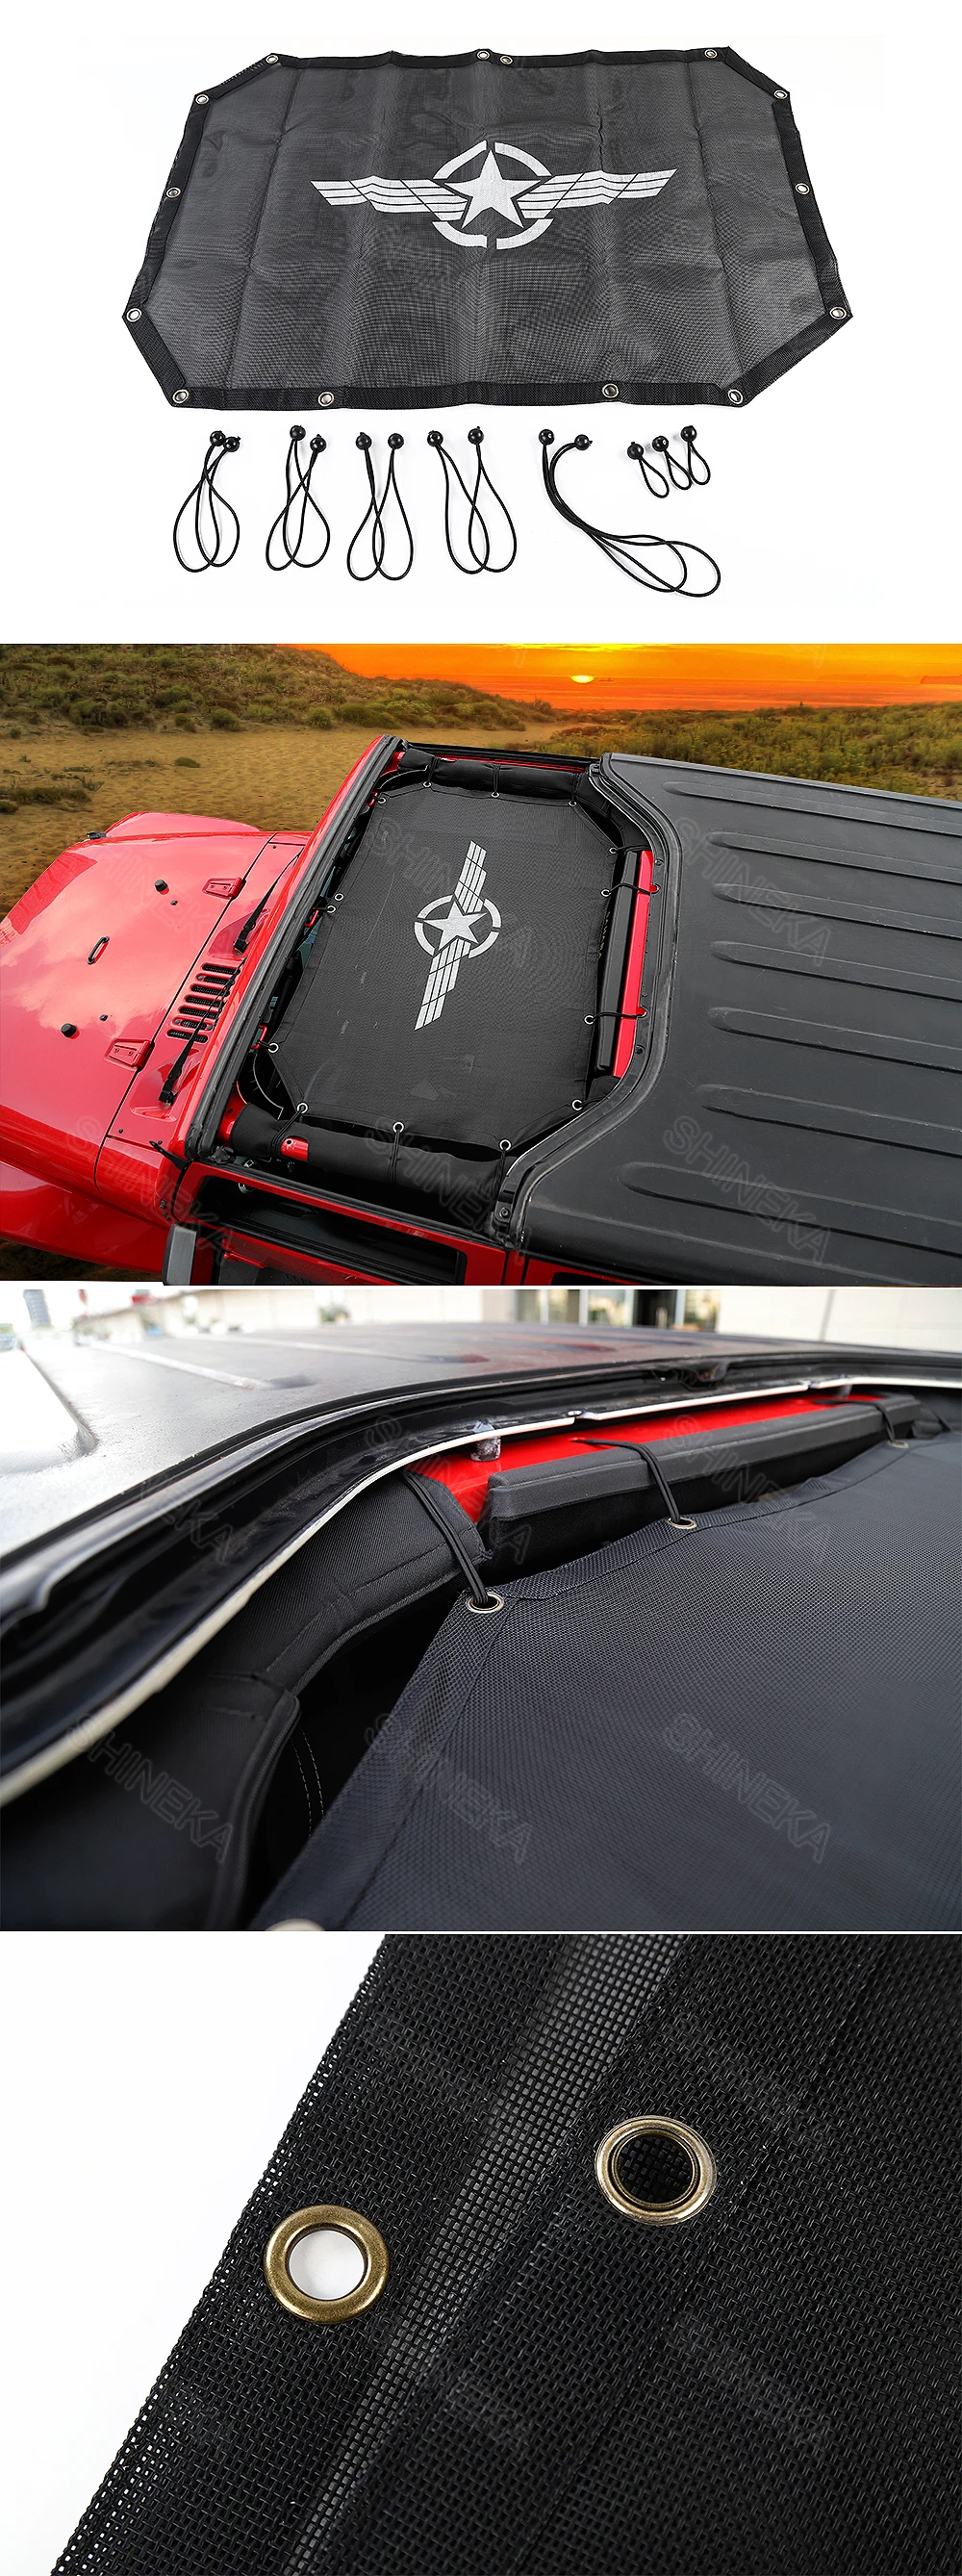 SHINEKA Топ сетка солнцезащитный козырек покрытие автомобиля крыша УФ Защита сетка для Jeep Wrangler JK 2 двери автомобиля аксессуары Стайлинг